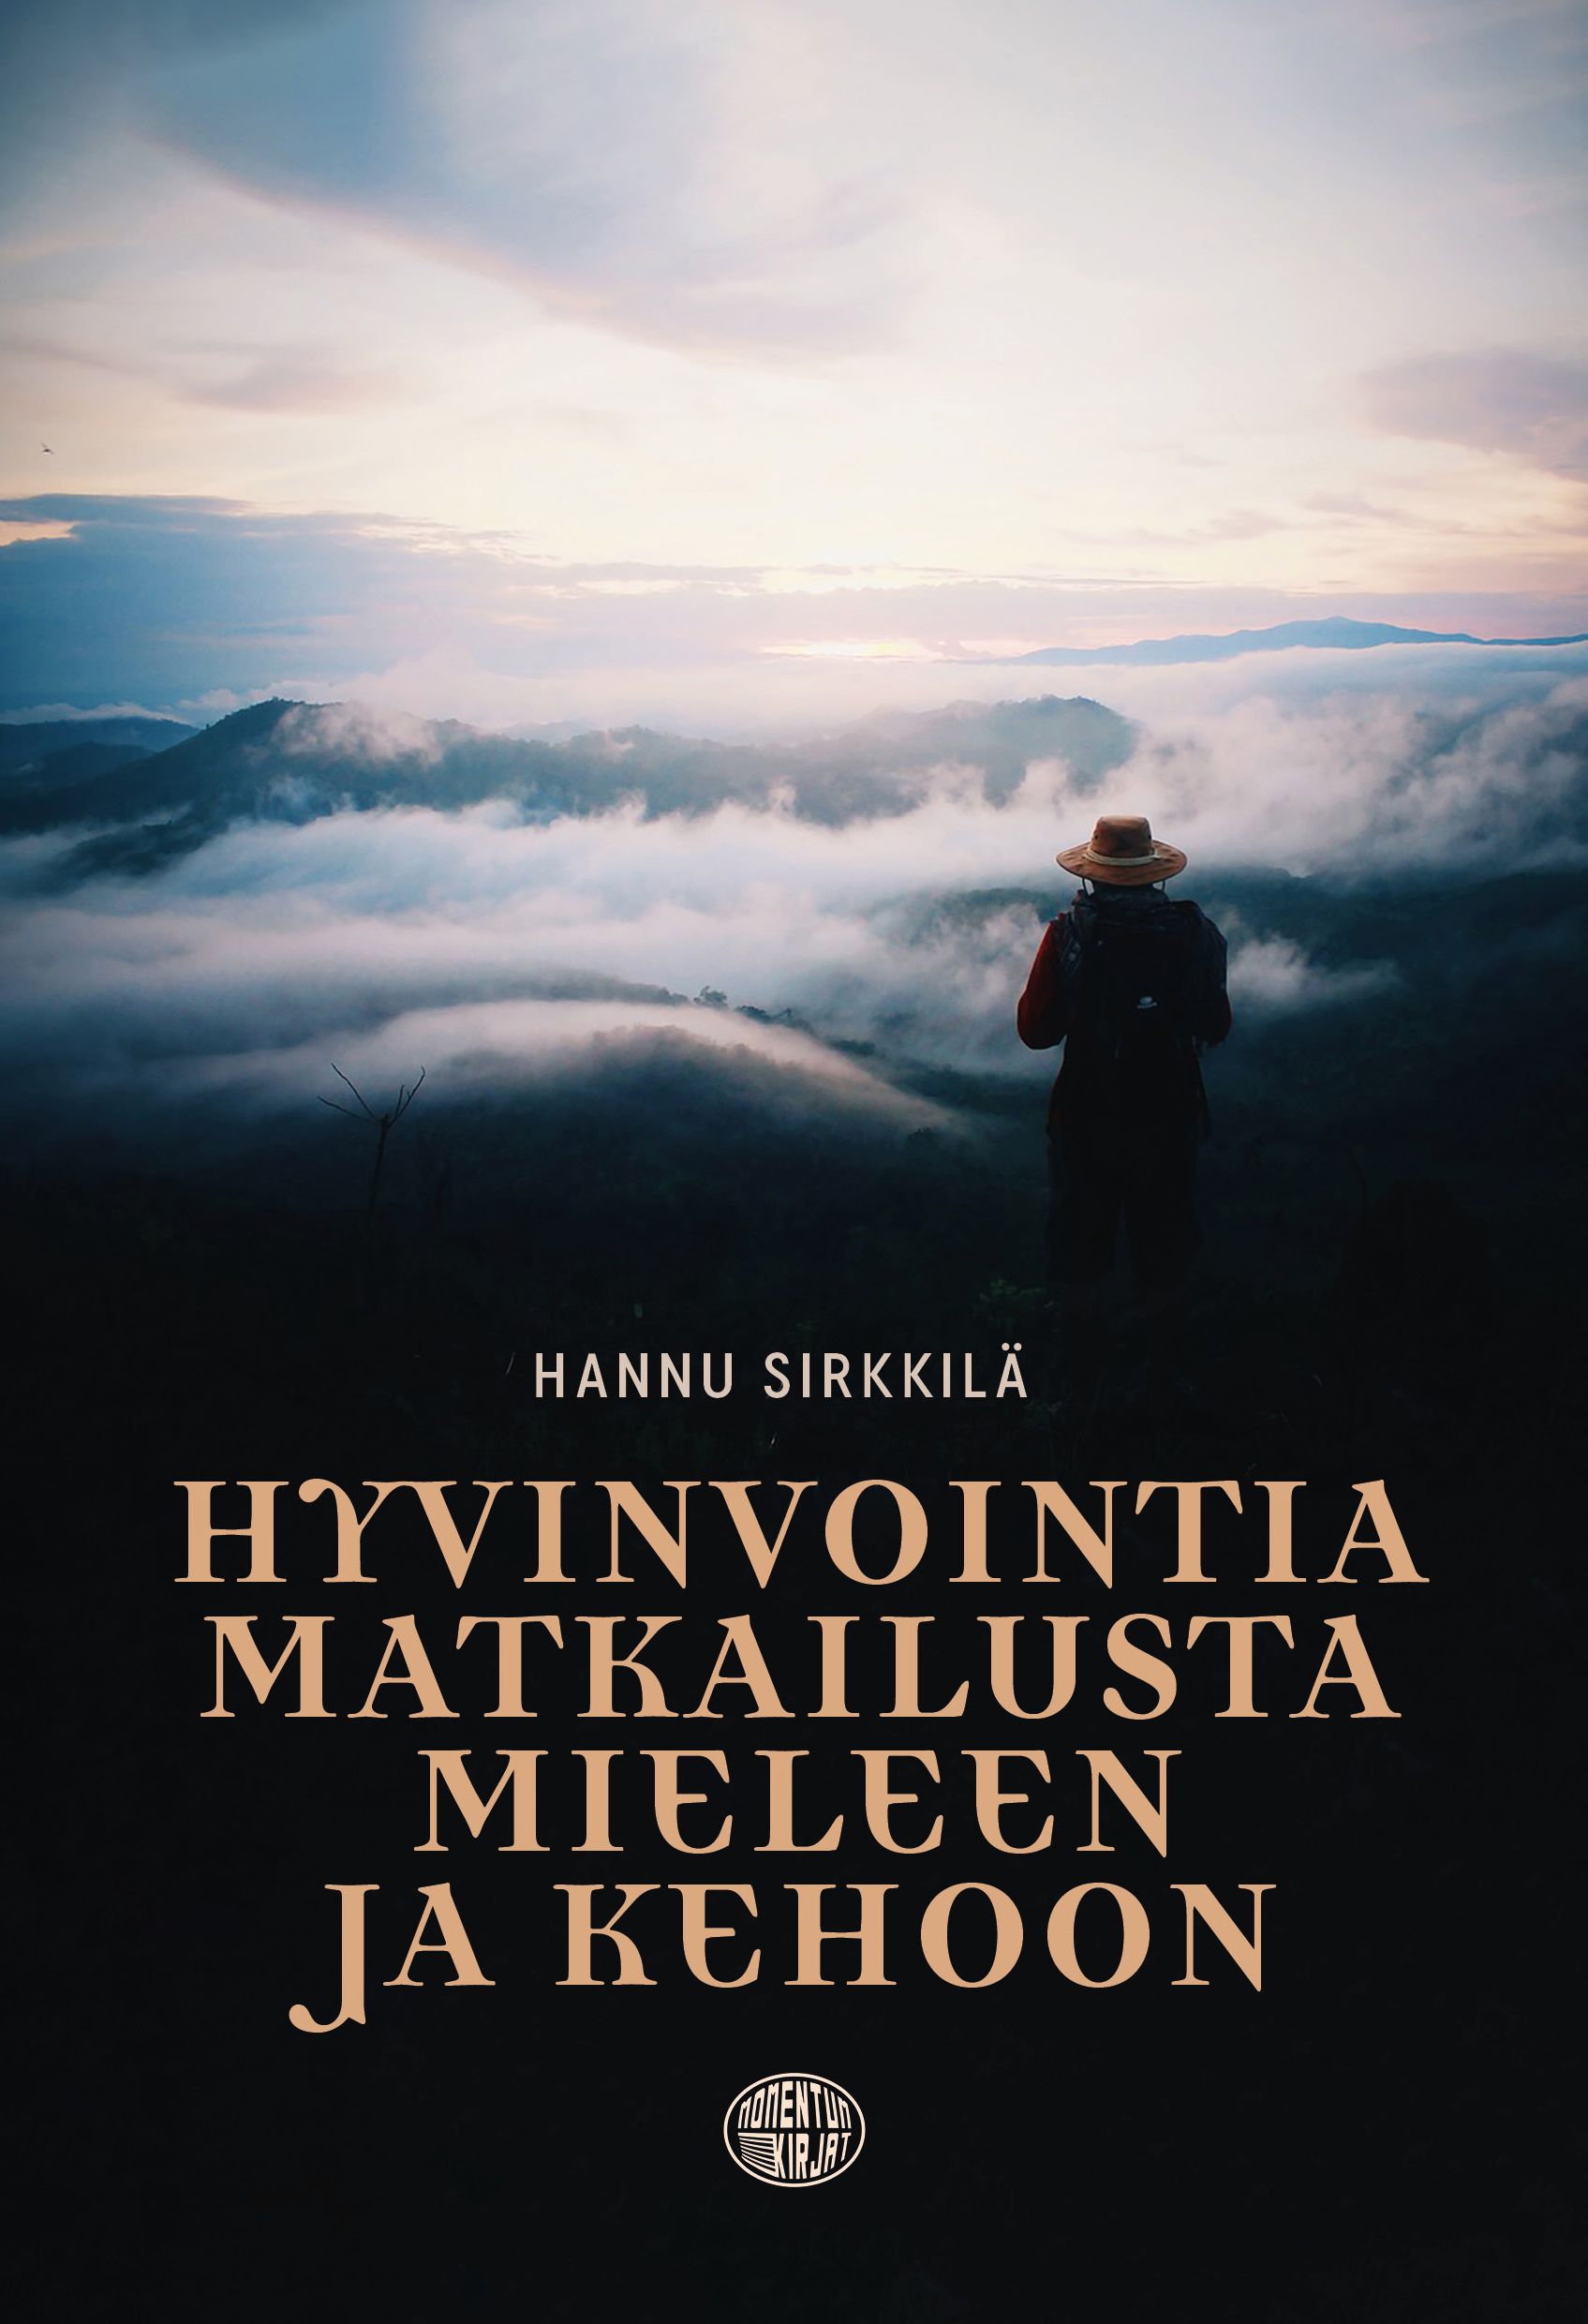 Hannu Sirkkilä : Hyvinvointia matkailusta mieleen ja kehoon